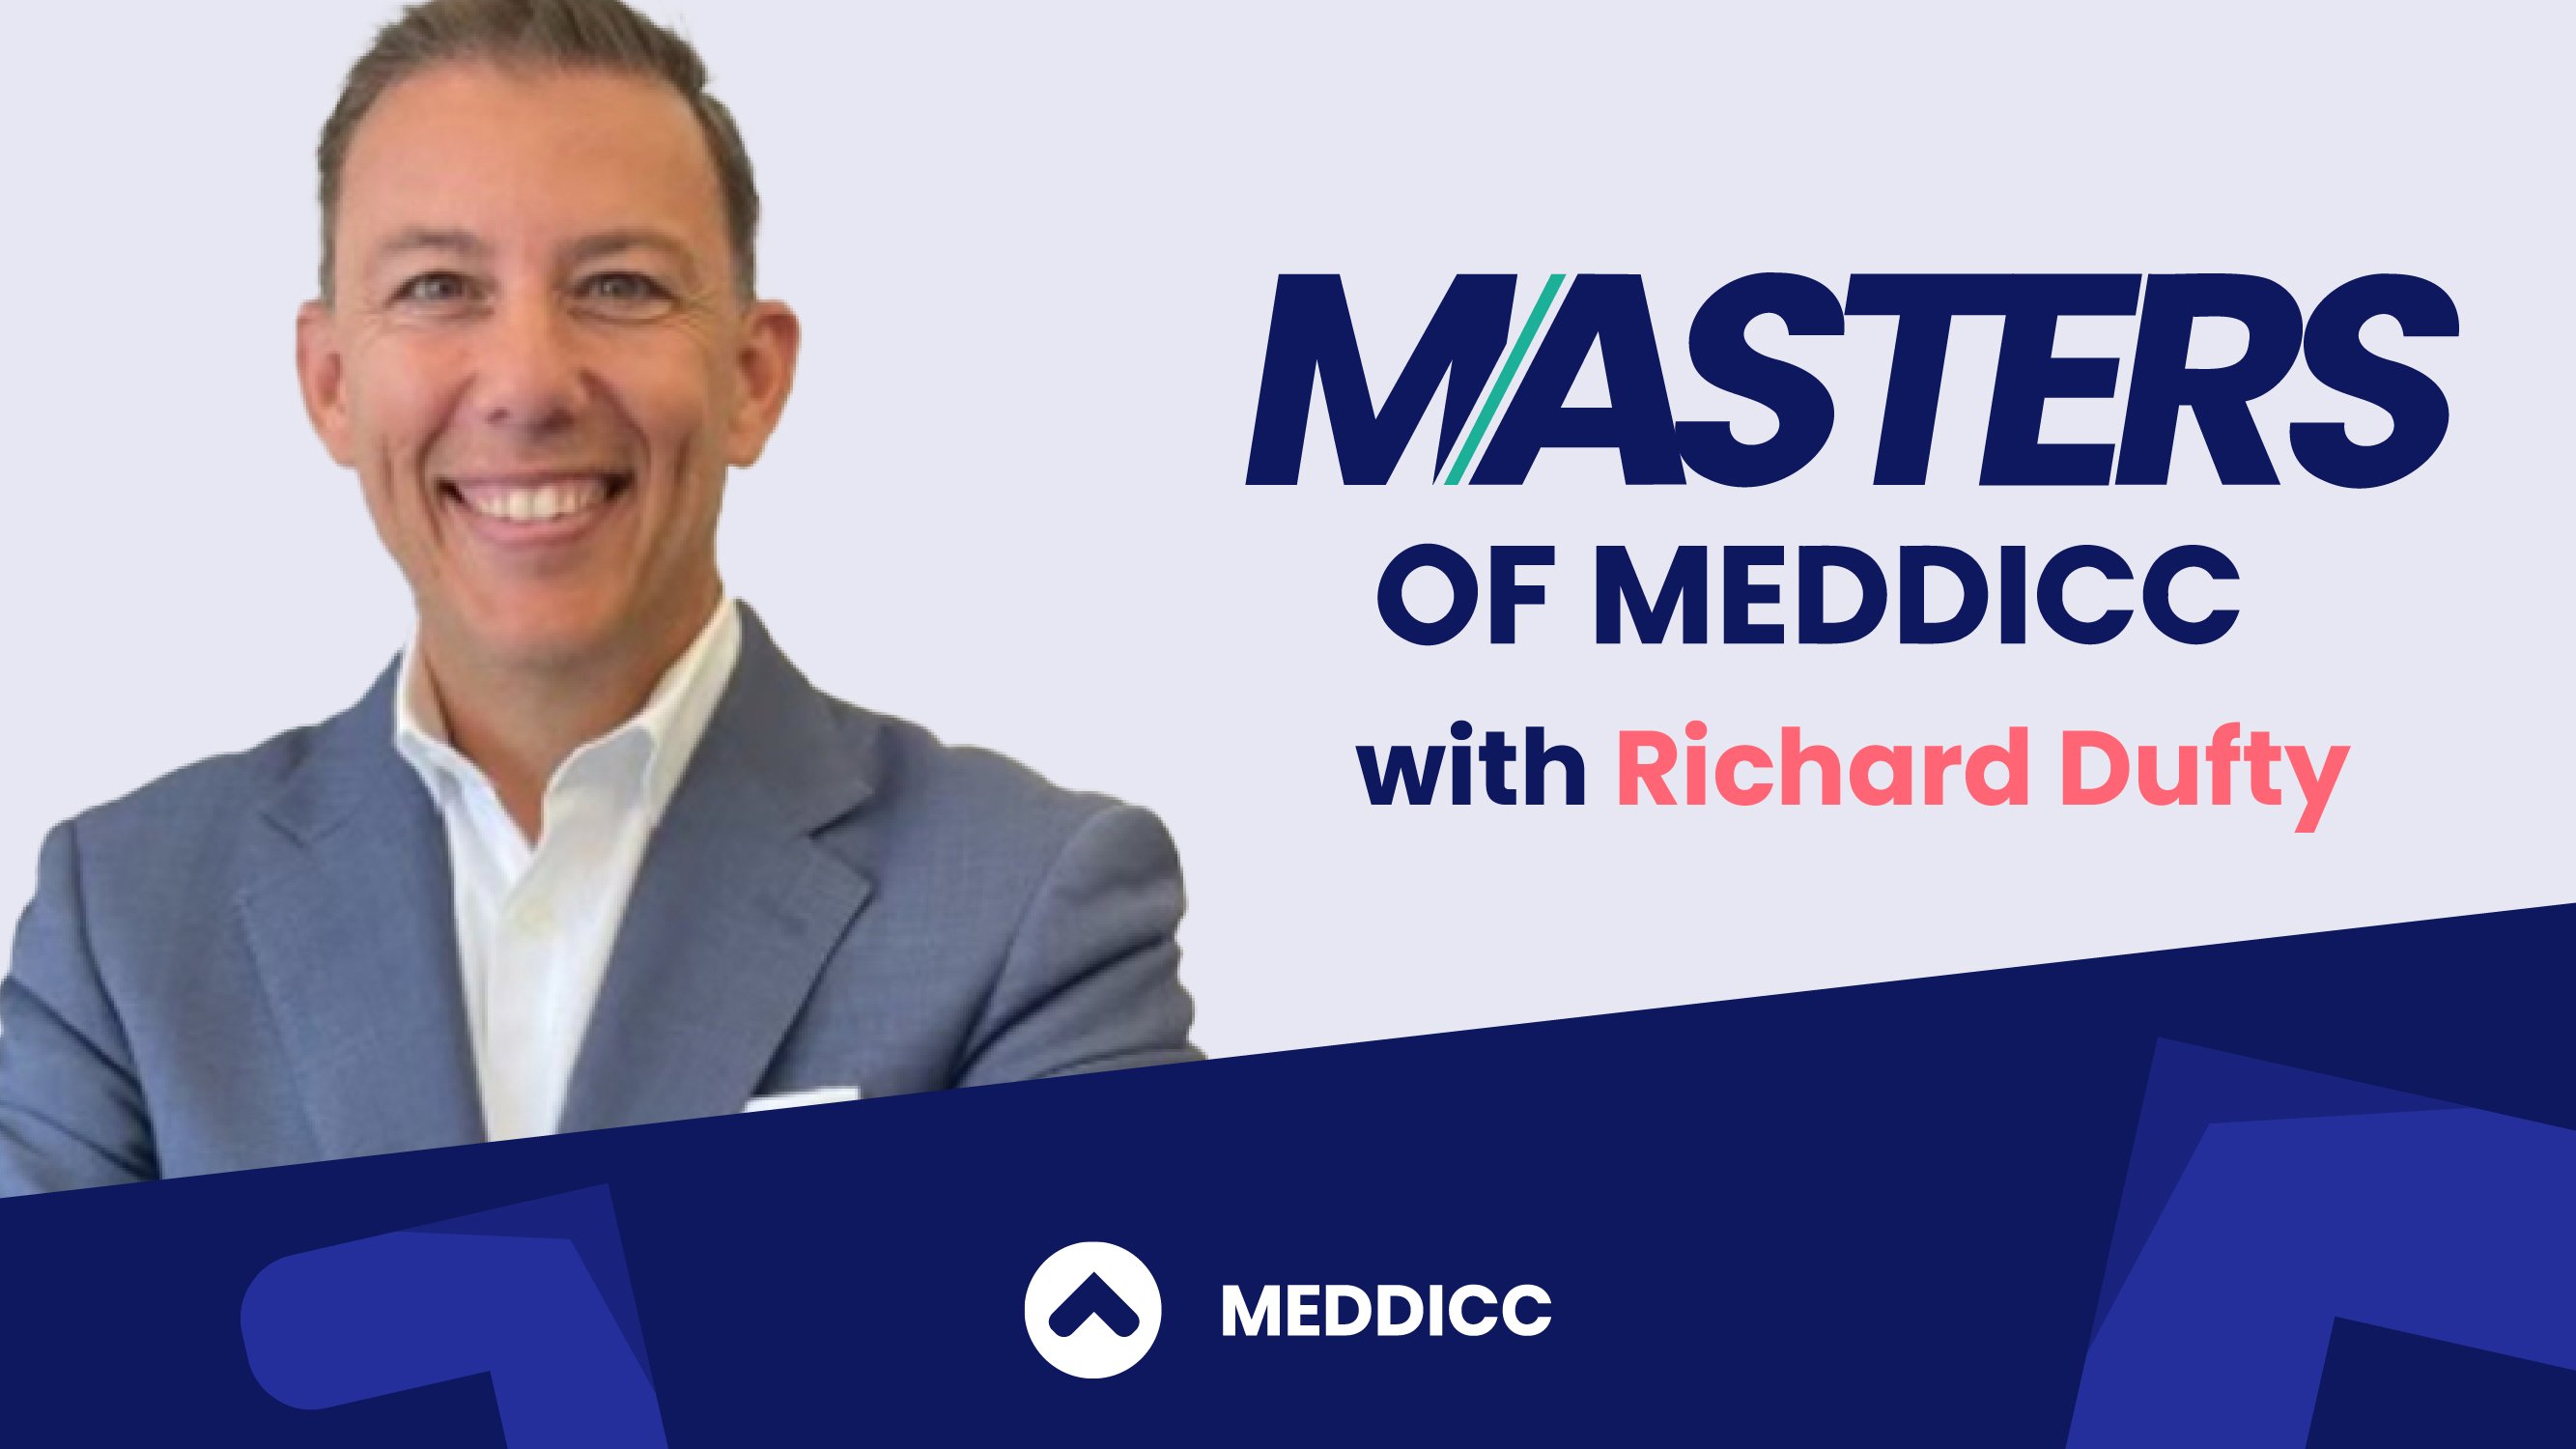 https://meddicc.com/meddicc-media/masters-of-meddicc-richard-dufty